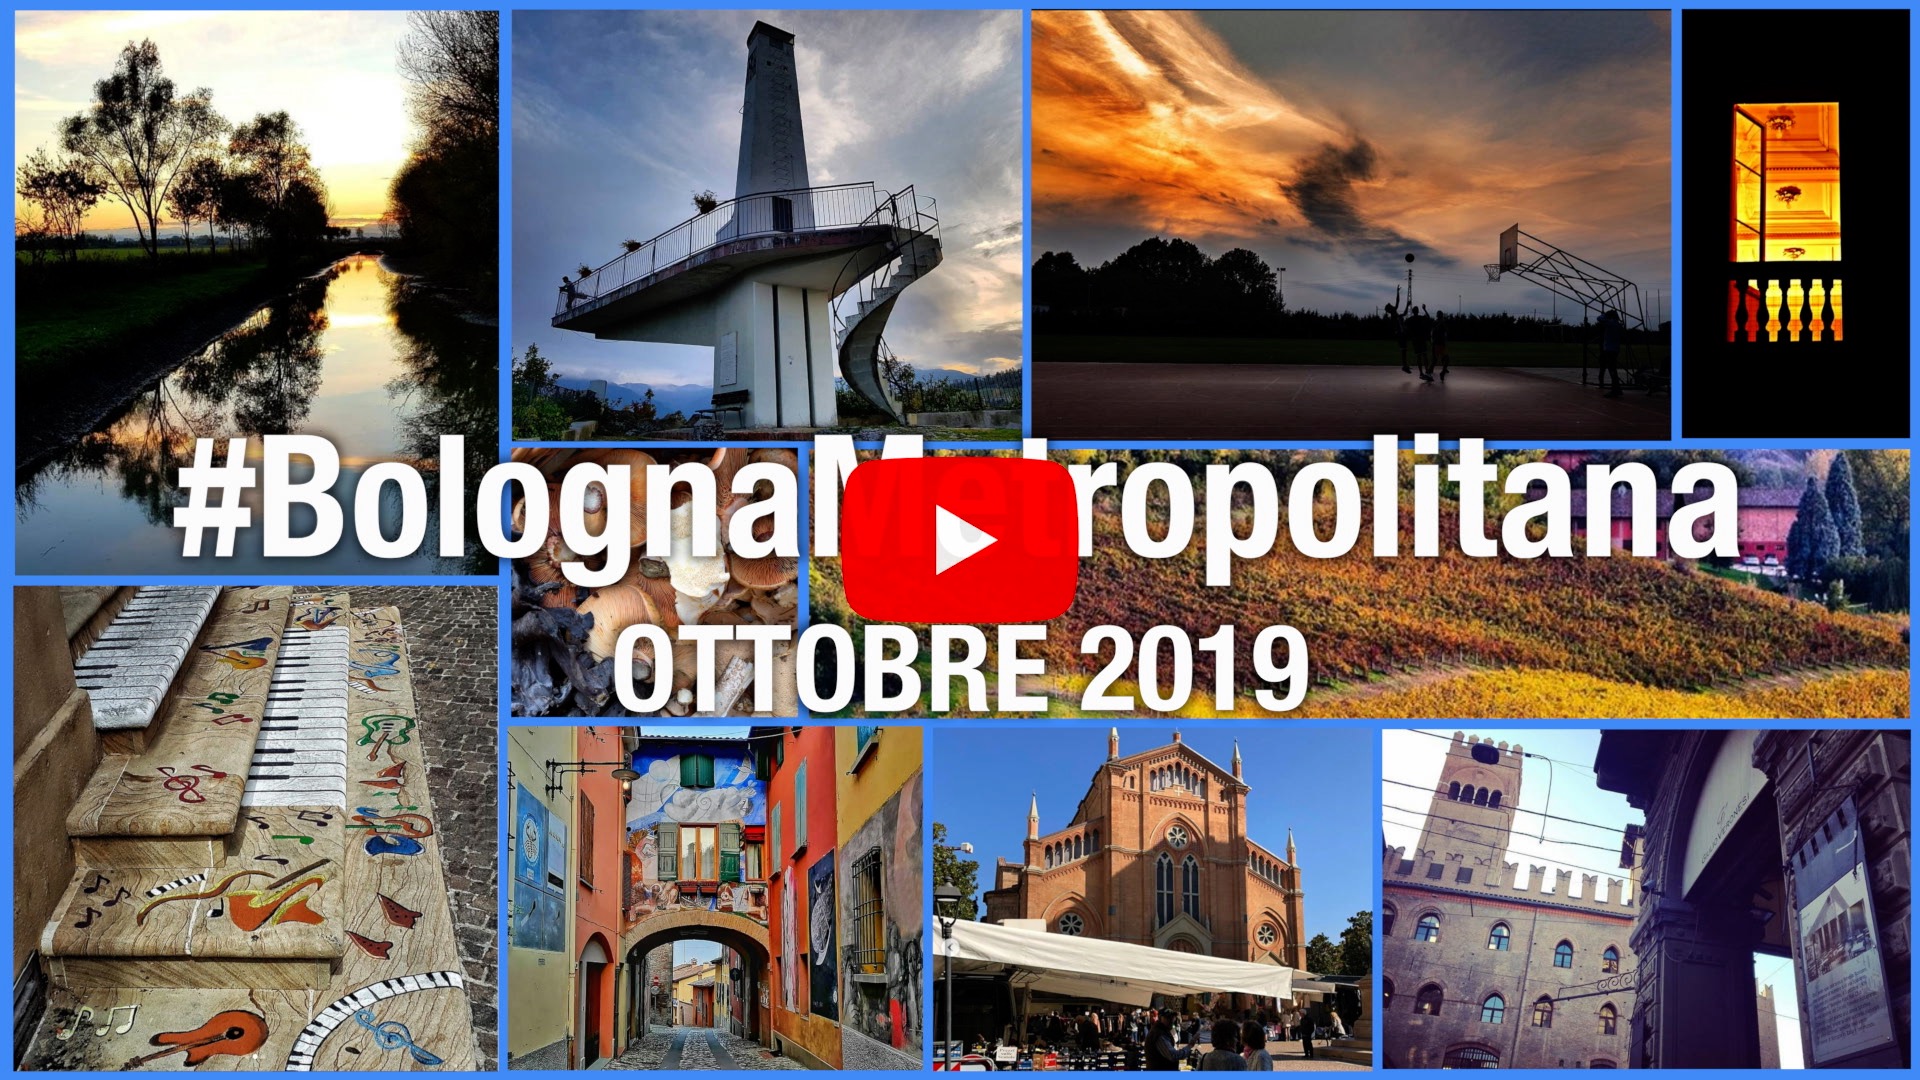 #BolognaMetropolitana - Le immagini più belle di ottobre 2019